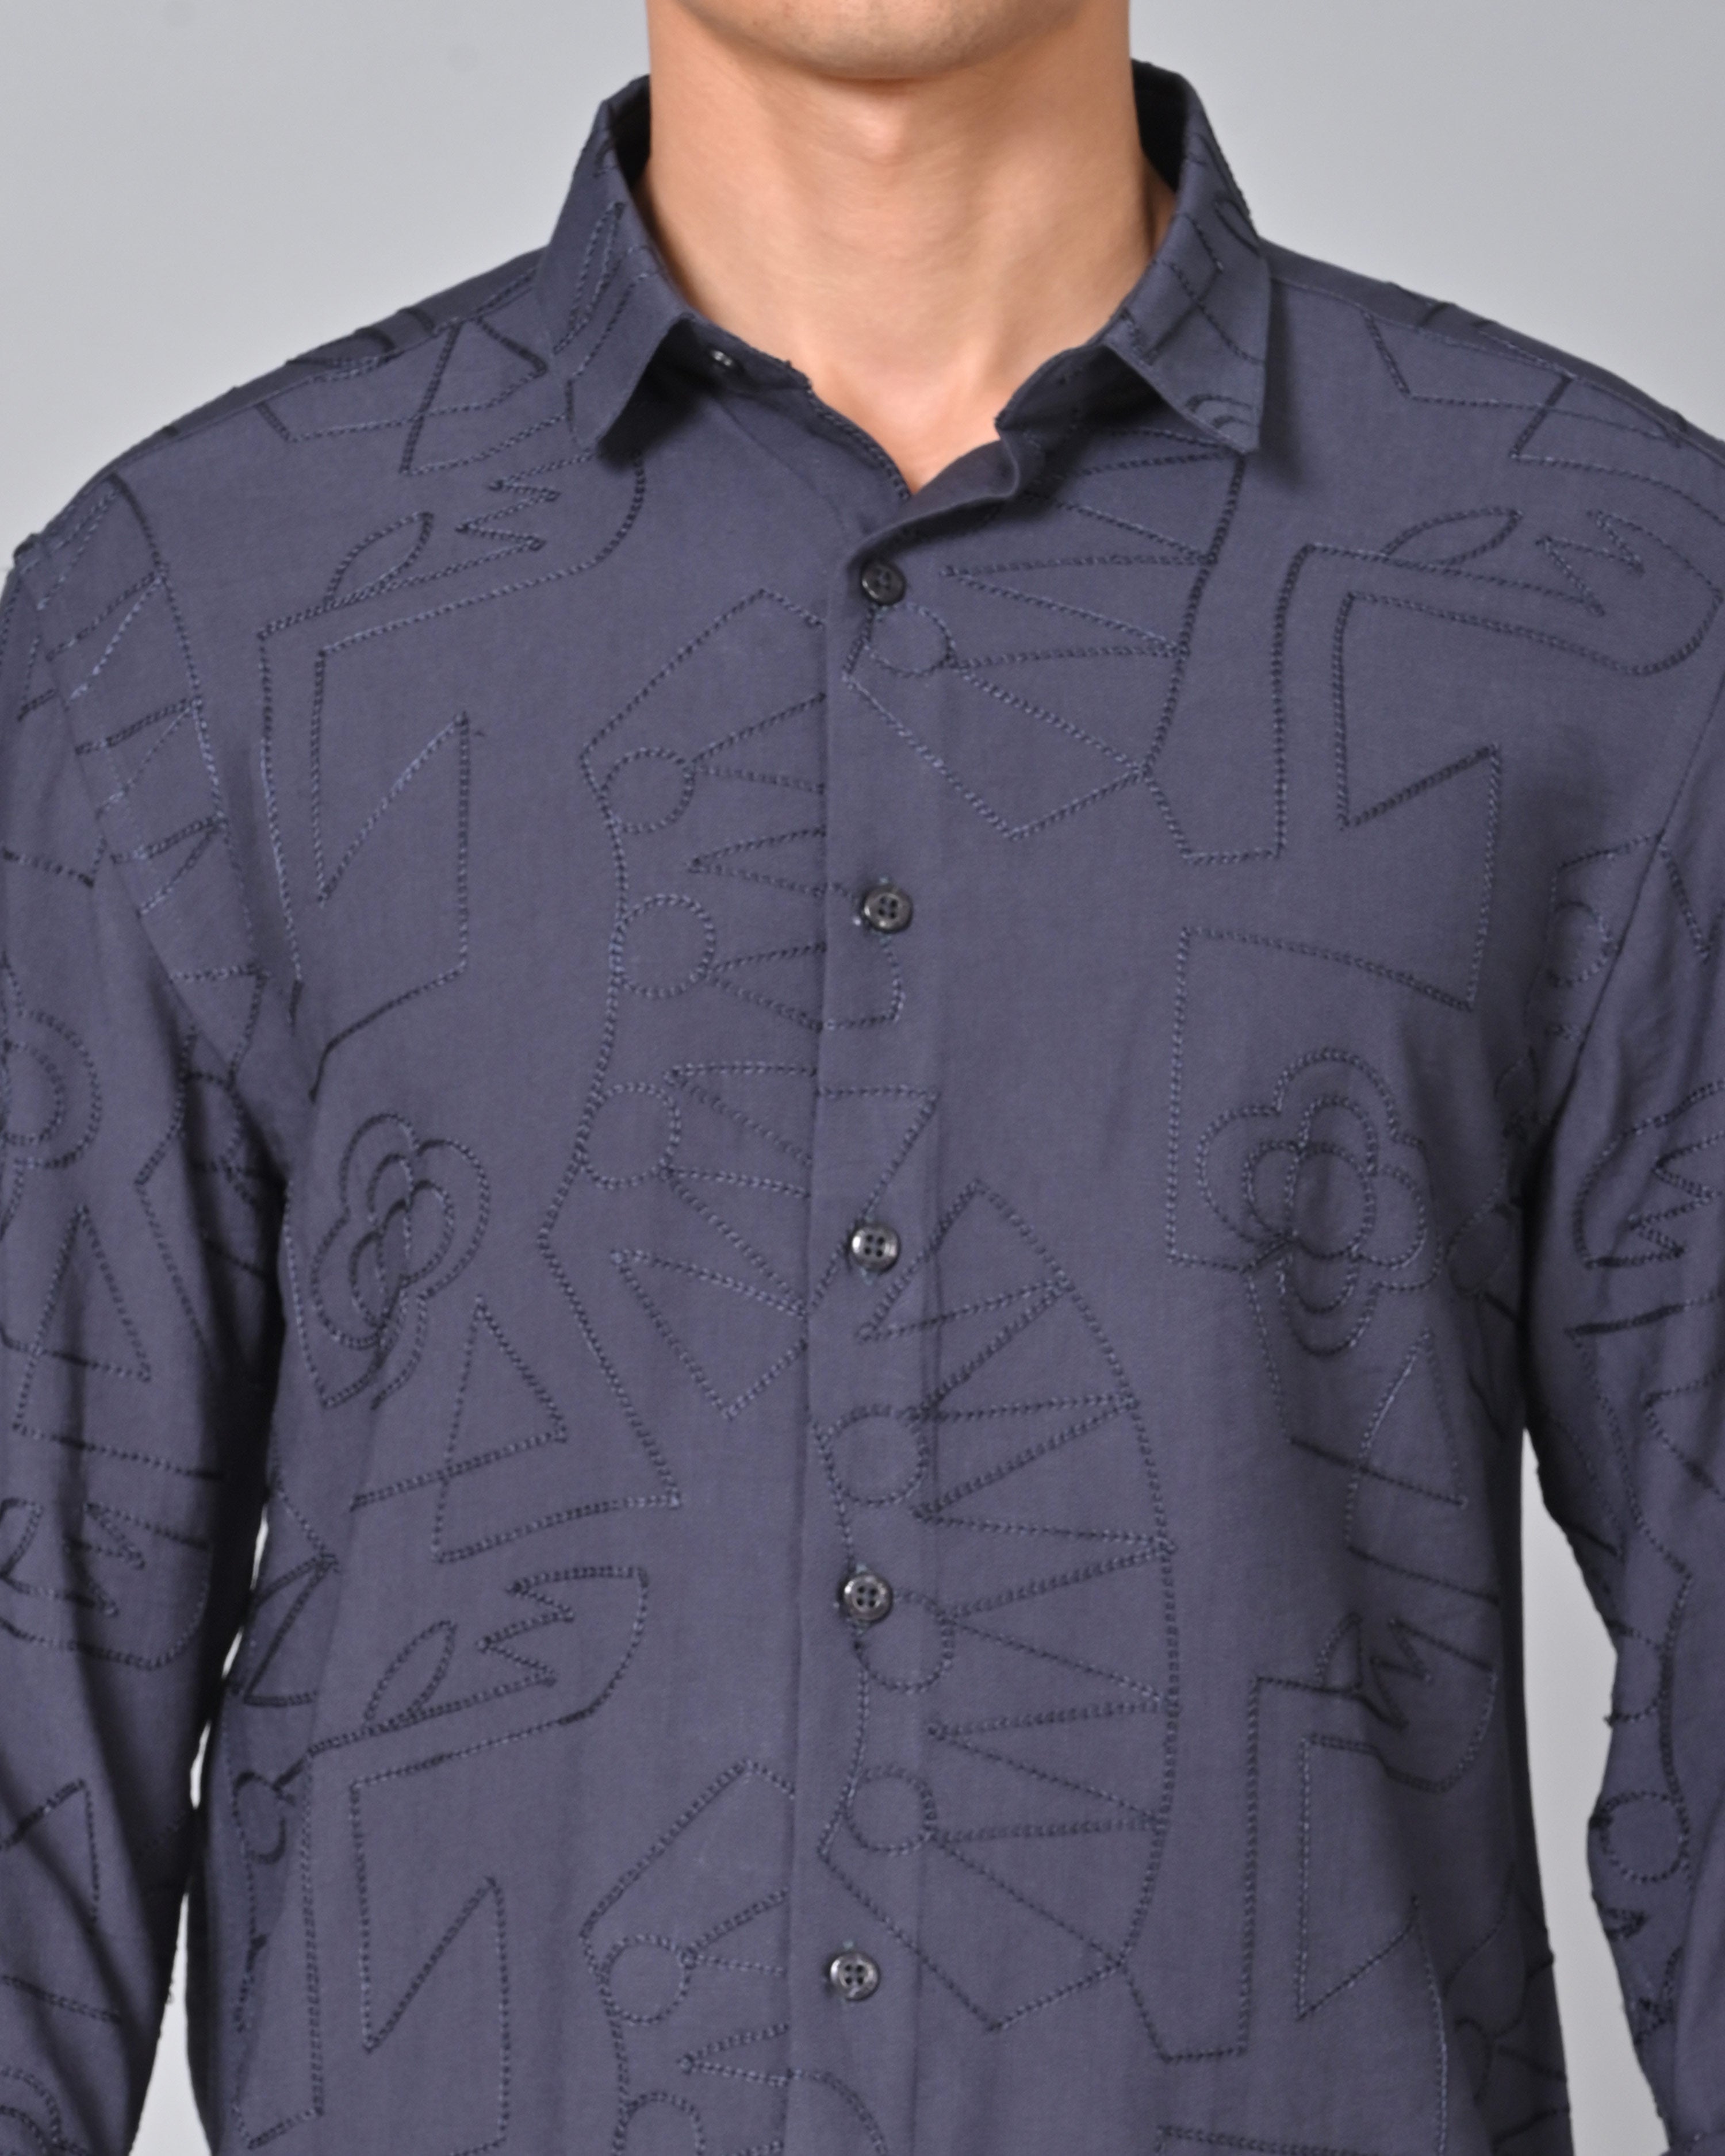 Buy Men's Embroidered Cotton Dark Blue Shirt